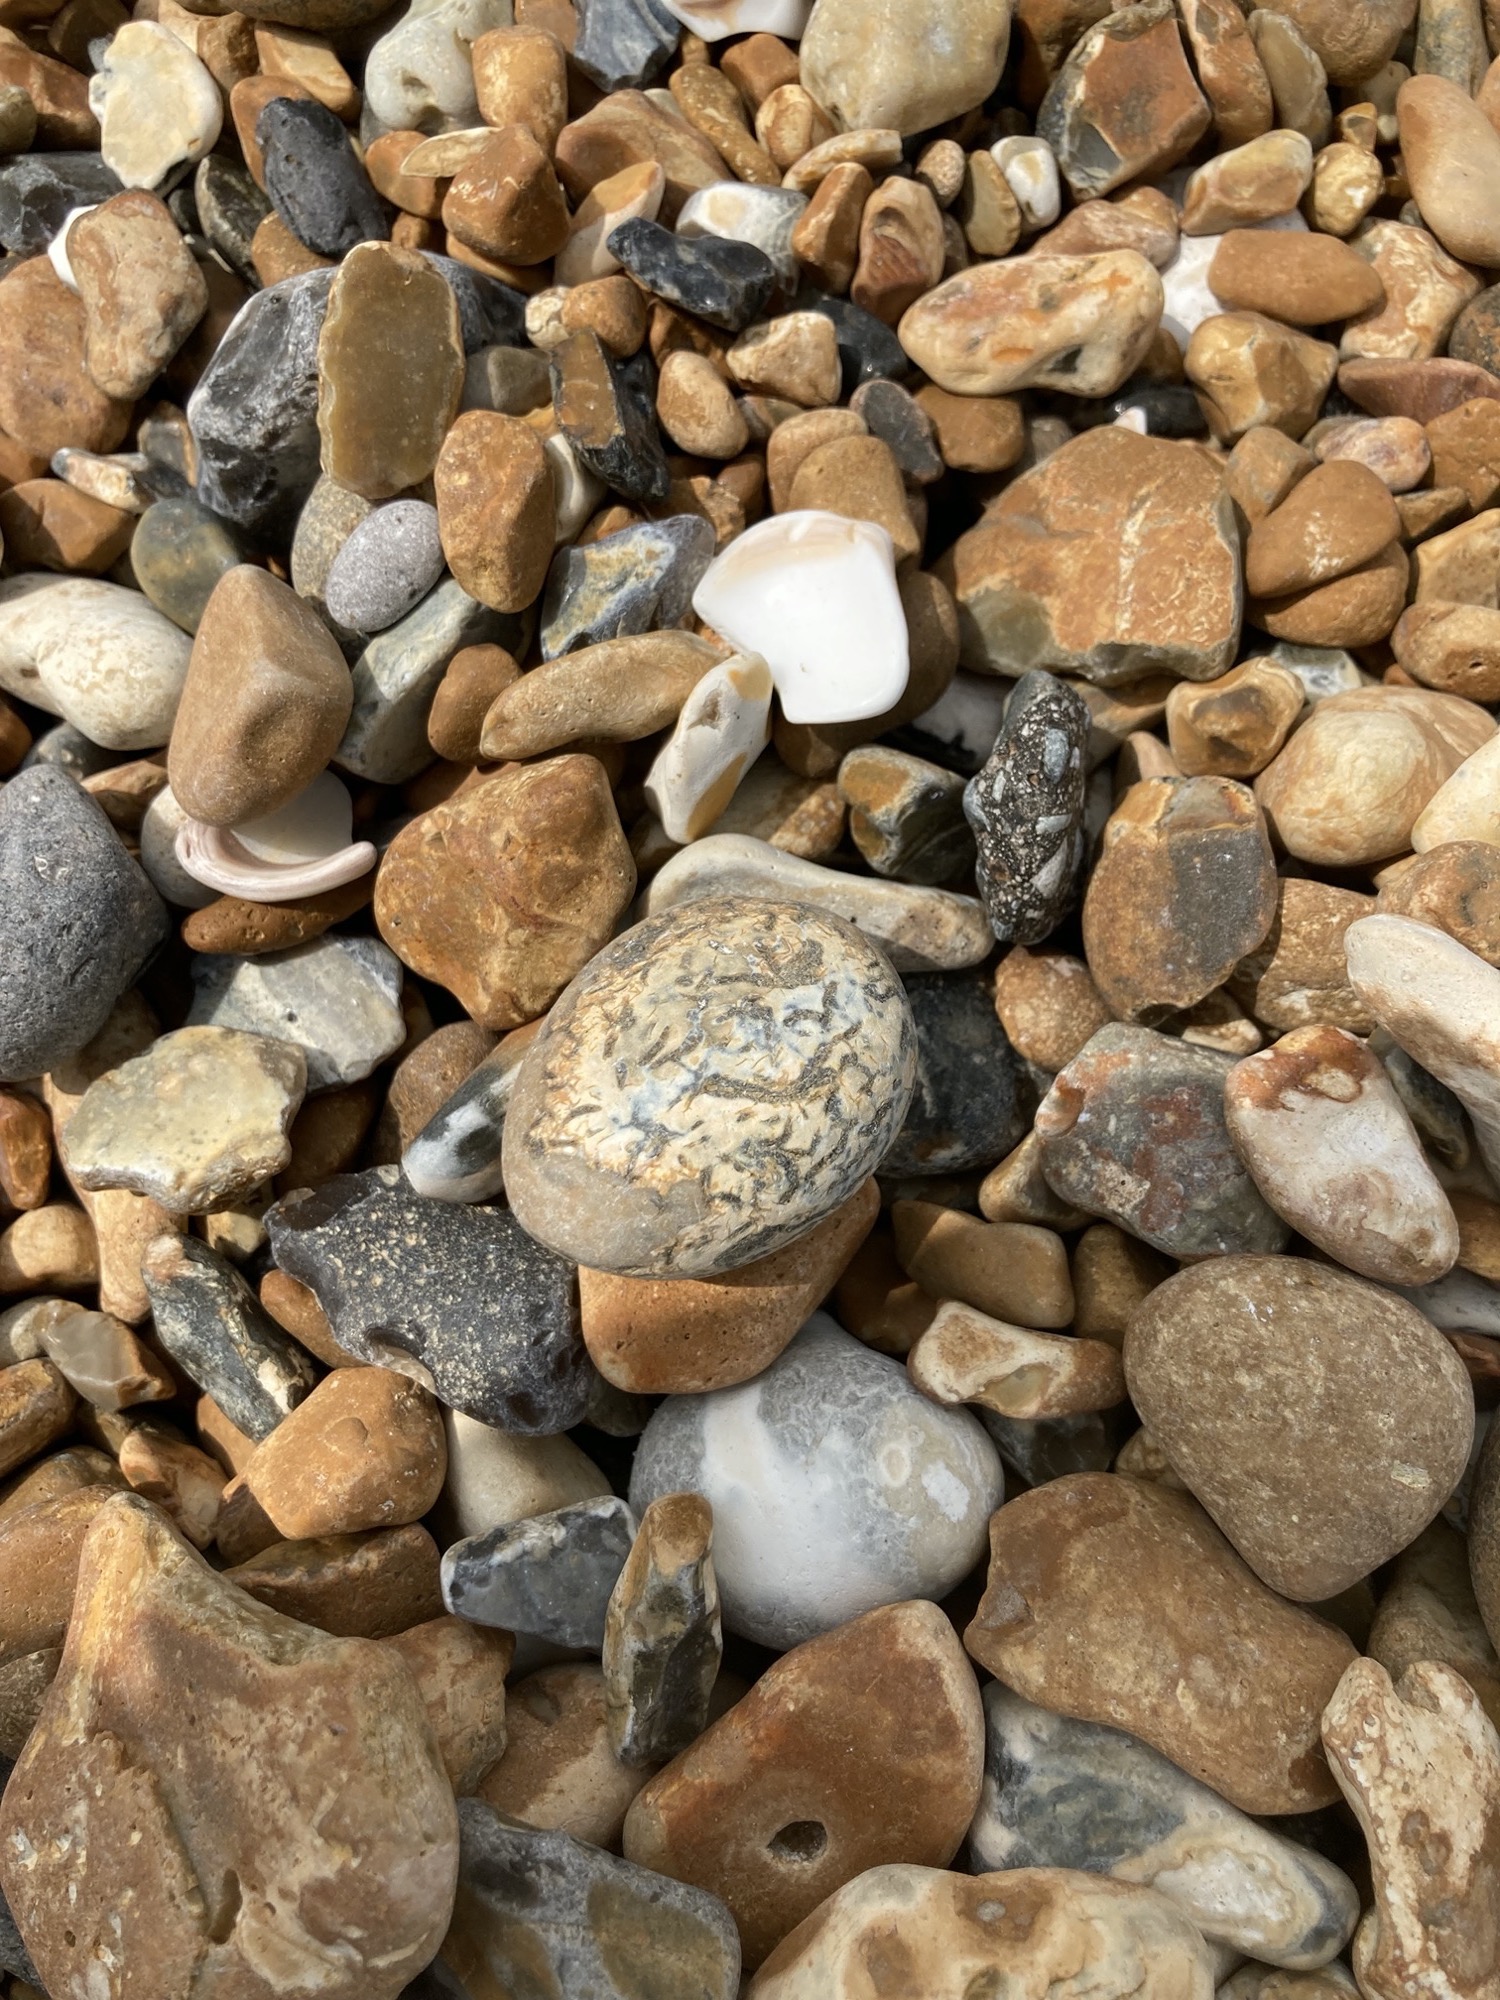 Detailaufnahme von Kieseln am Strand, rötliche und graue Kiesel unterschiedlicher Form, Steine mit labyrinthartiger Zeichnung, durch die Brandung rund geriebene Stücke von Muscheln, unten ein Stein mit einem Loch